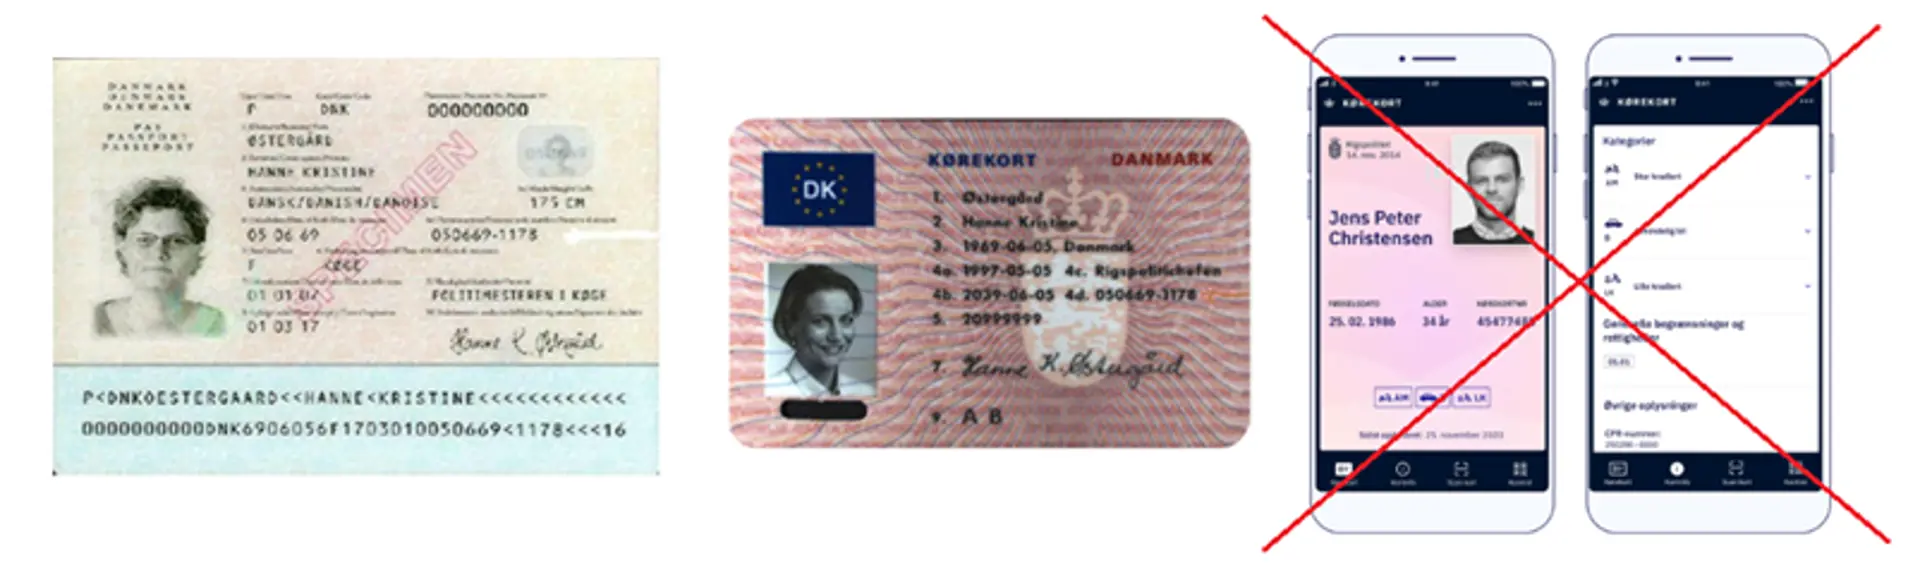 Dansk Pas og kørekort